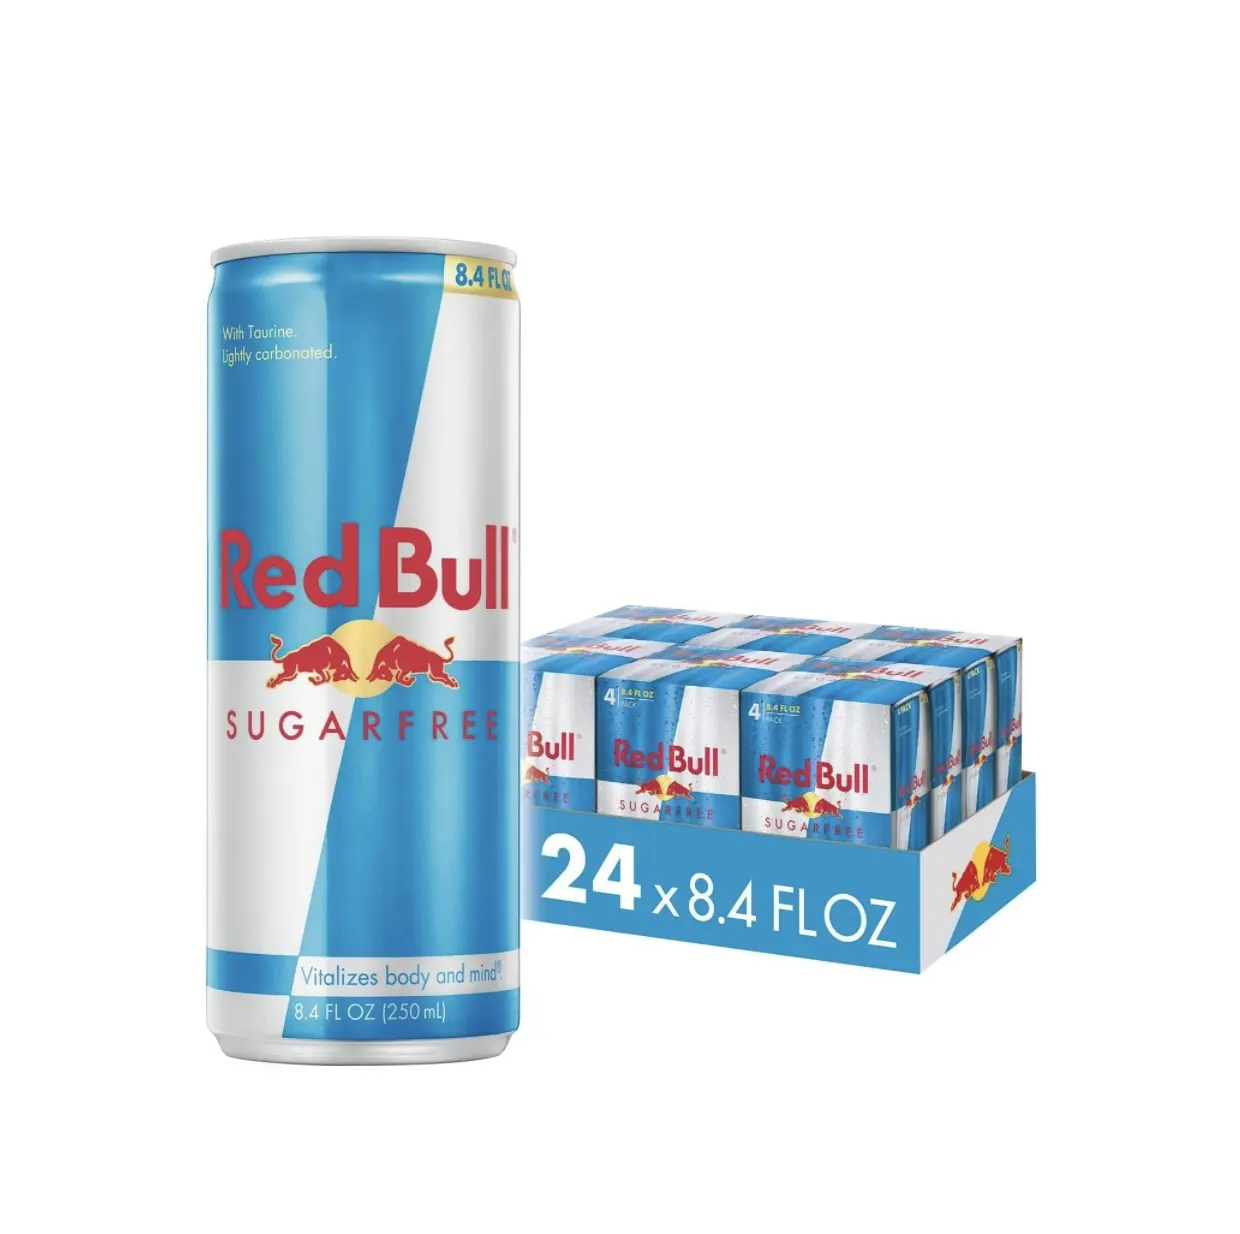 Paling banyak dijual 100% asli Red Bull Sugar Free Energy Drink Online, 8.4 FlOz, 24 kaleng (6 pak 4) harga grosir ekspor